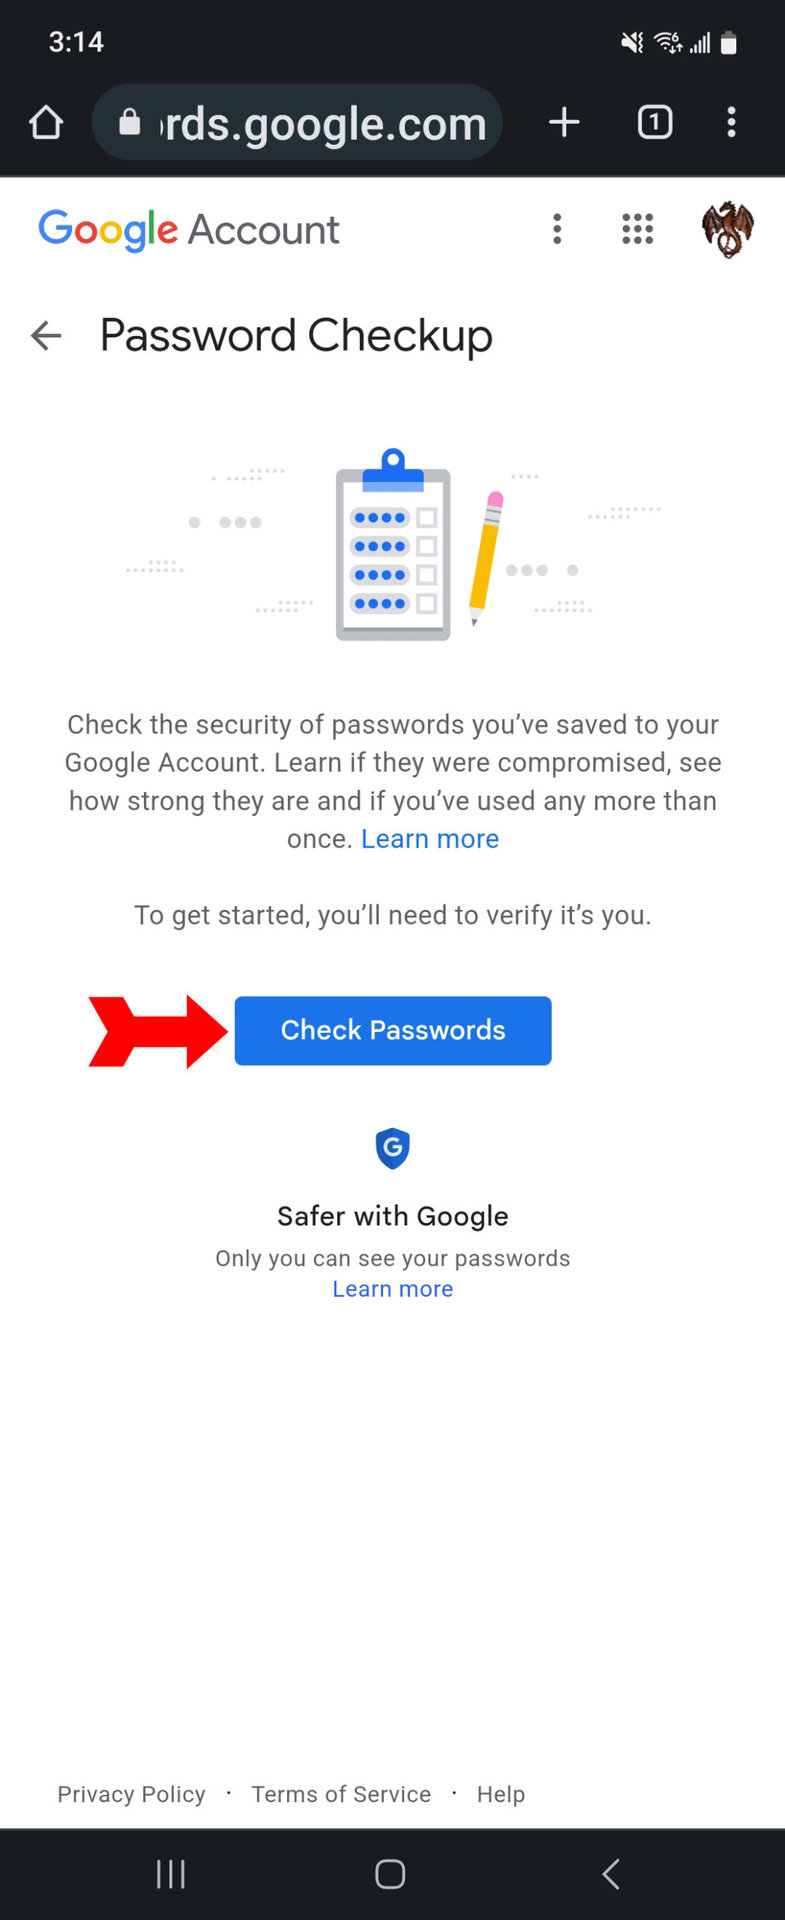 Saved Passwords Start Password Checkup